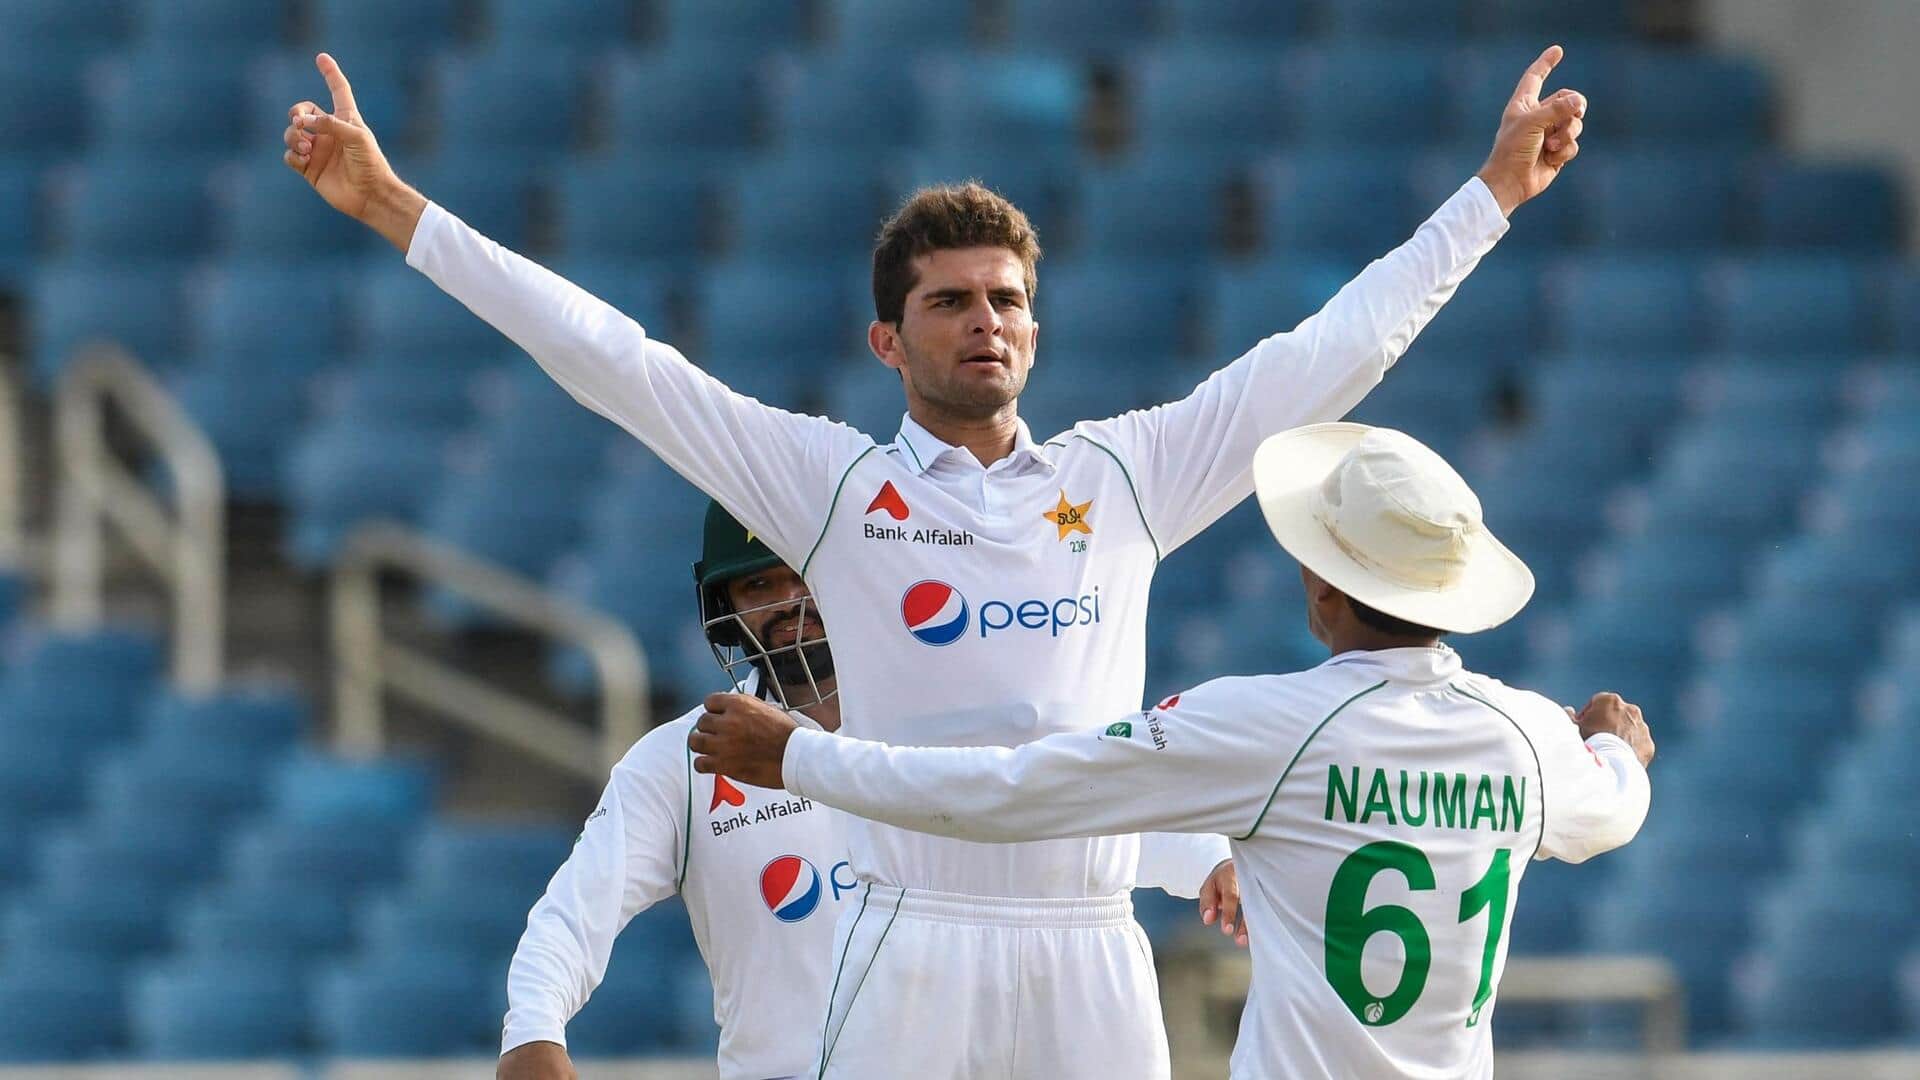 श्रीलंका दौरे के लिए पाकिस्तान क्रिकेट टीम का ऐलान, शाहीन अफरीदी की हुई वापसी 